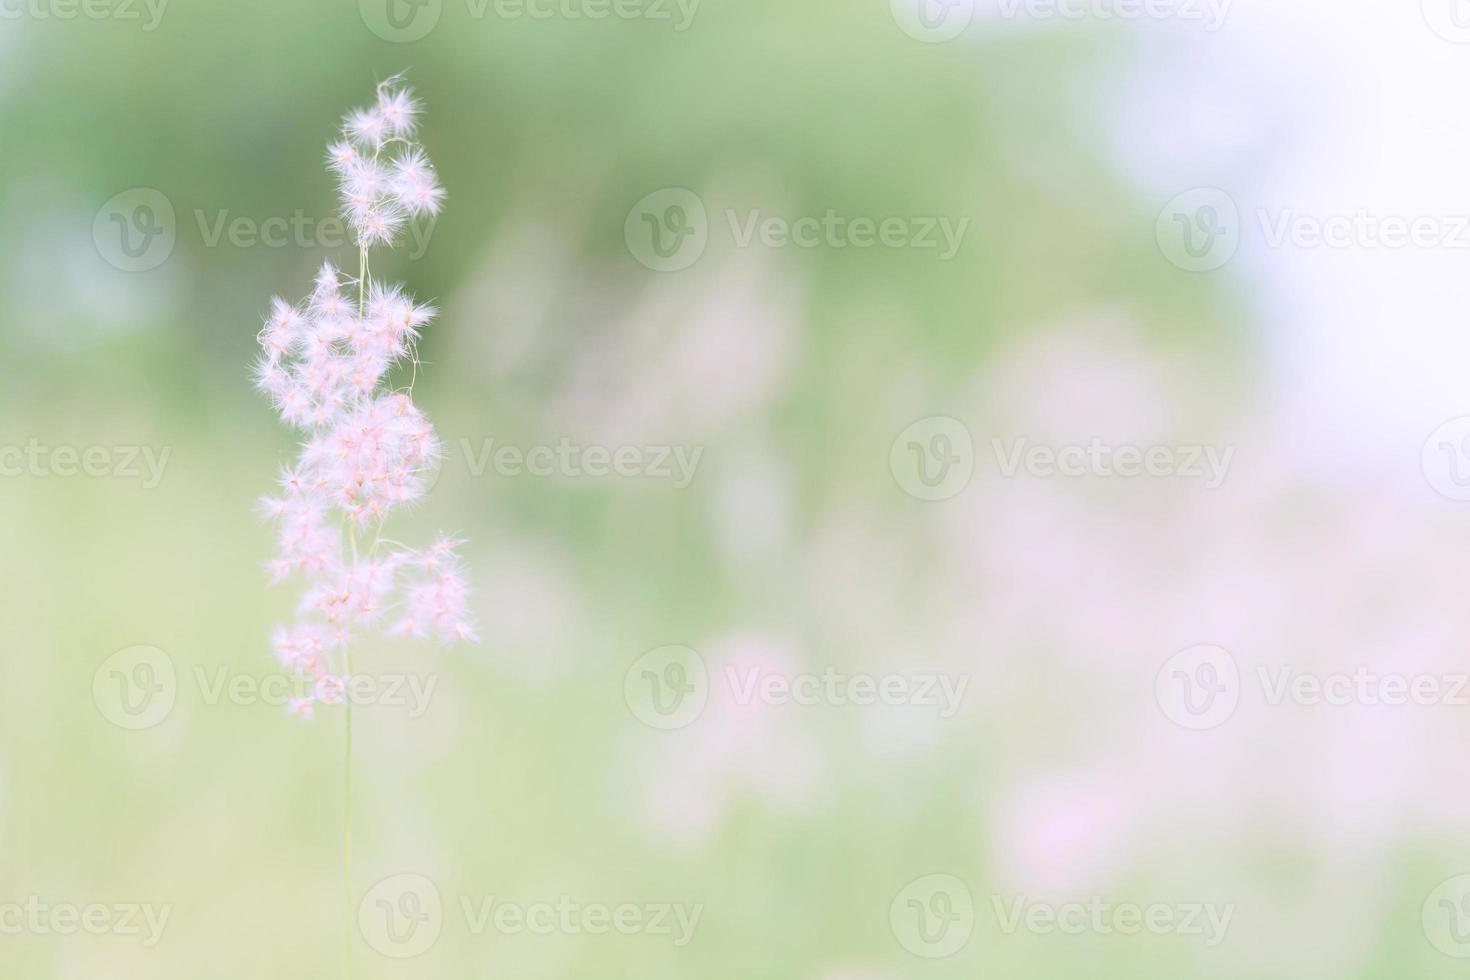 Flower grass blurred in outdoor, vintage background photo